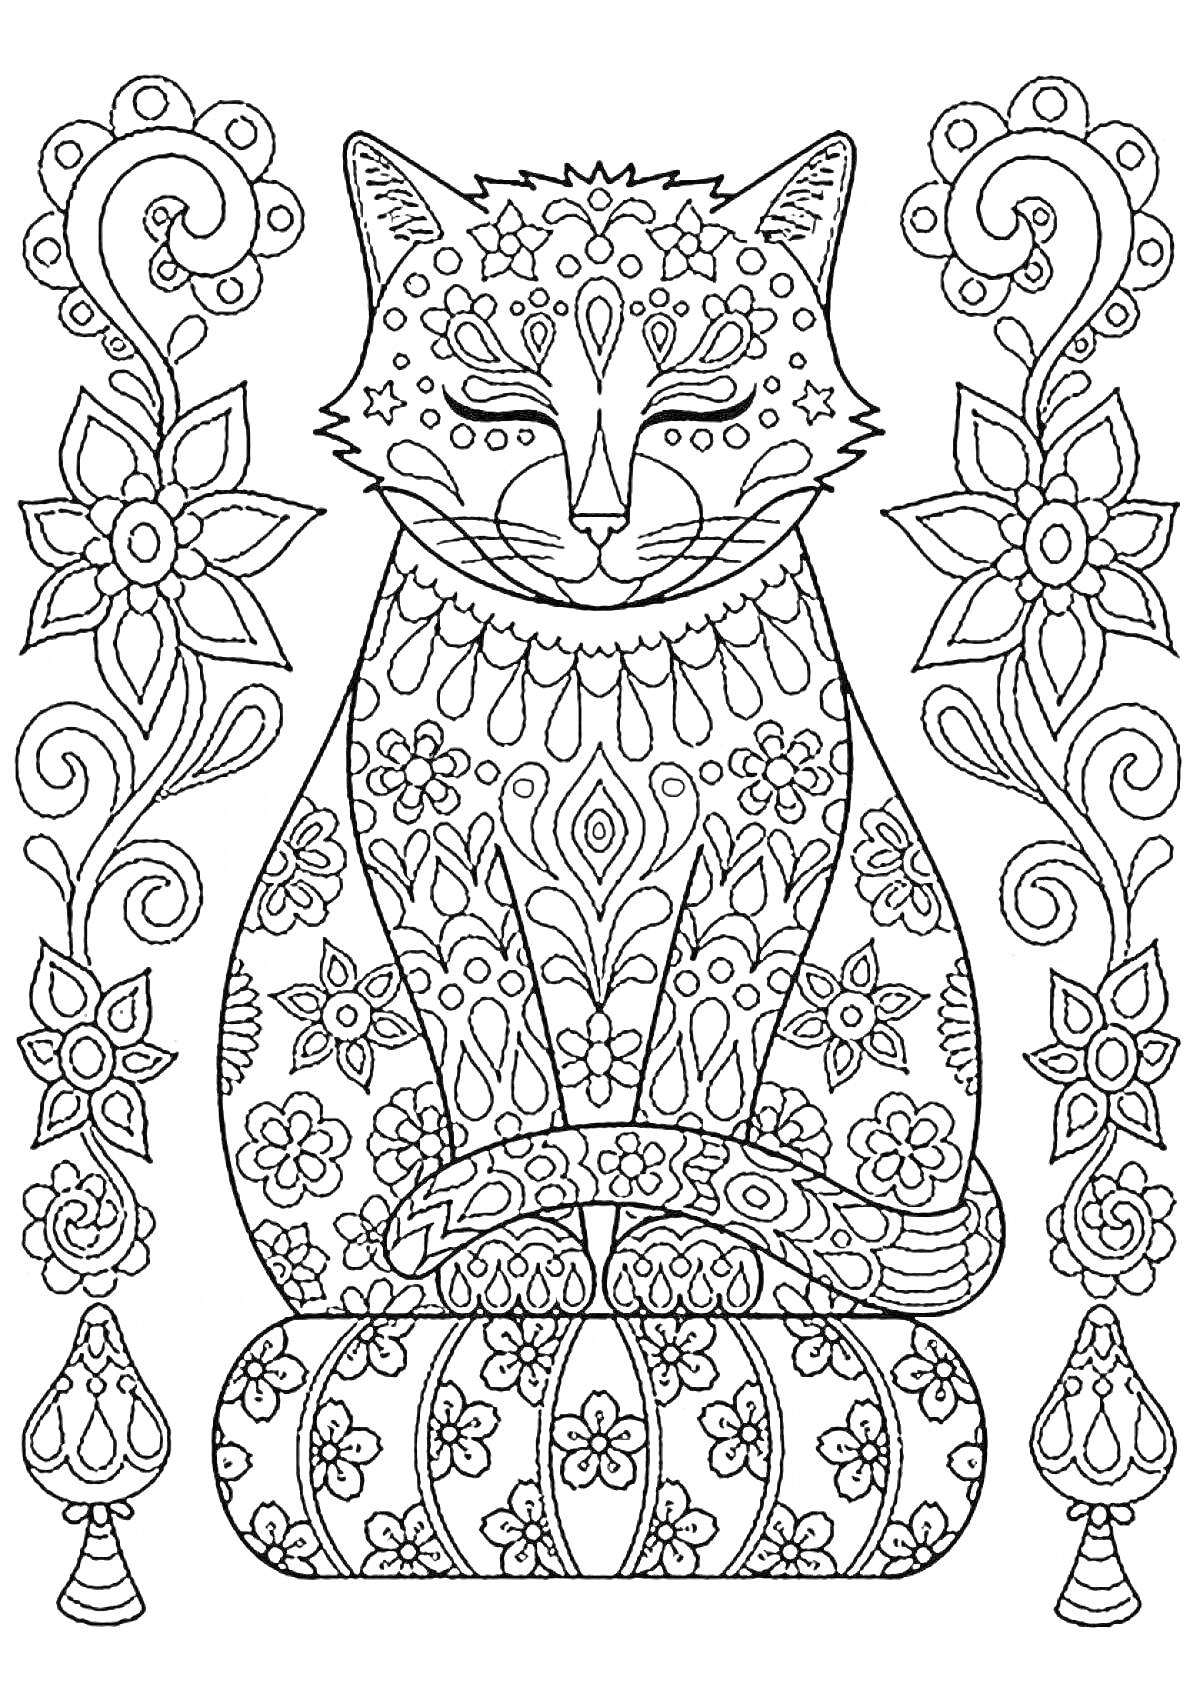 Раскраска котик с узорами, окруженный цветочными орнаментами и декоративными элементами